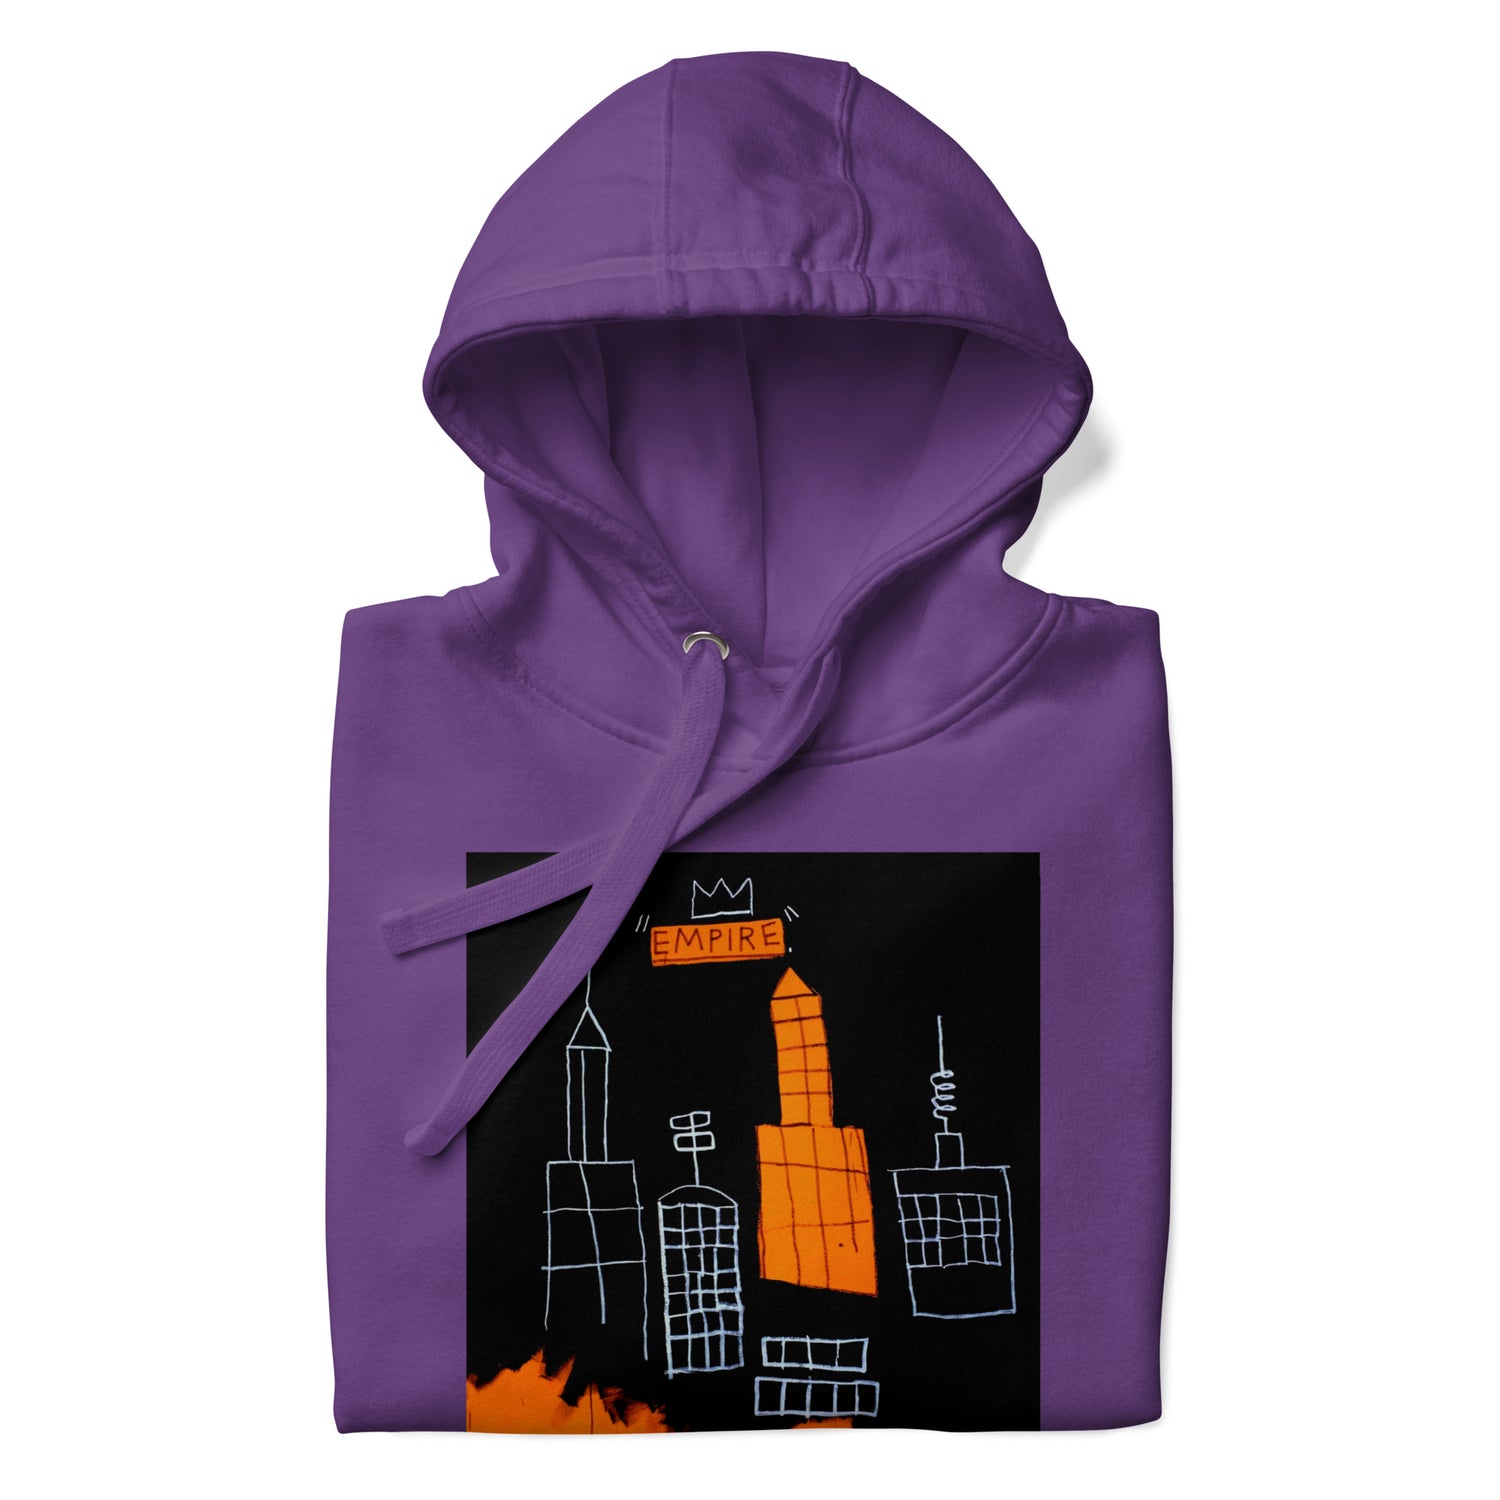 Jean-Michel Basquiat "Mecca" Artwork Printed Premium Streetwear Sweatshirt Hoodie Purple